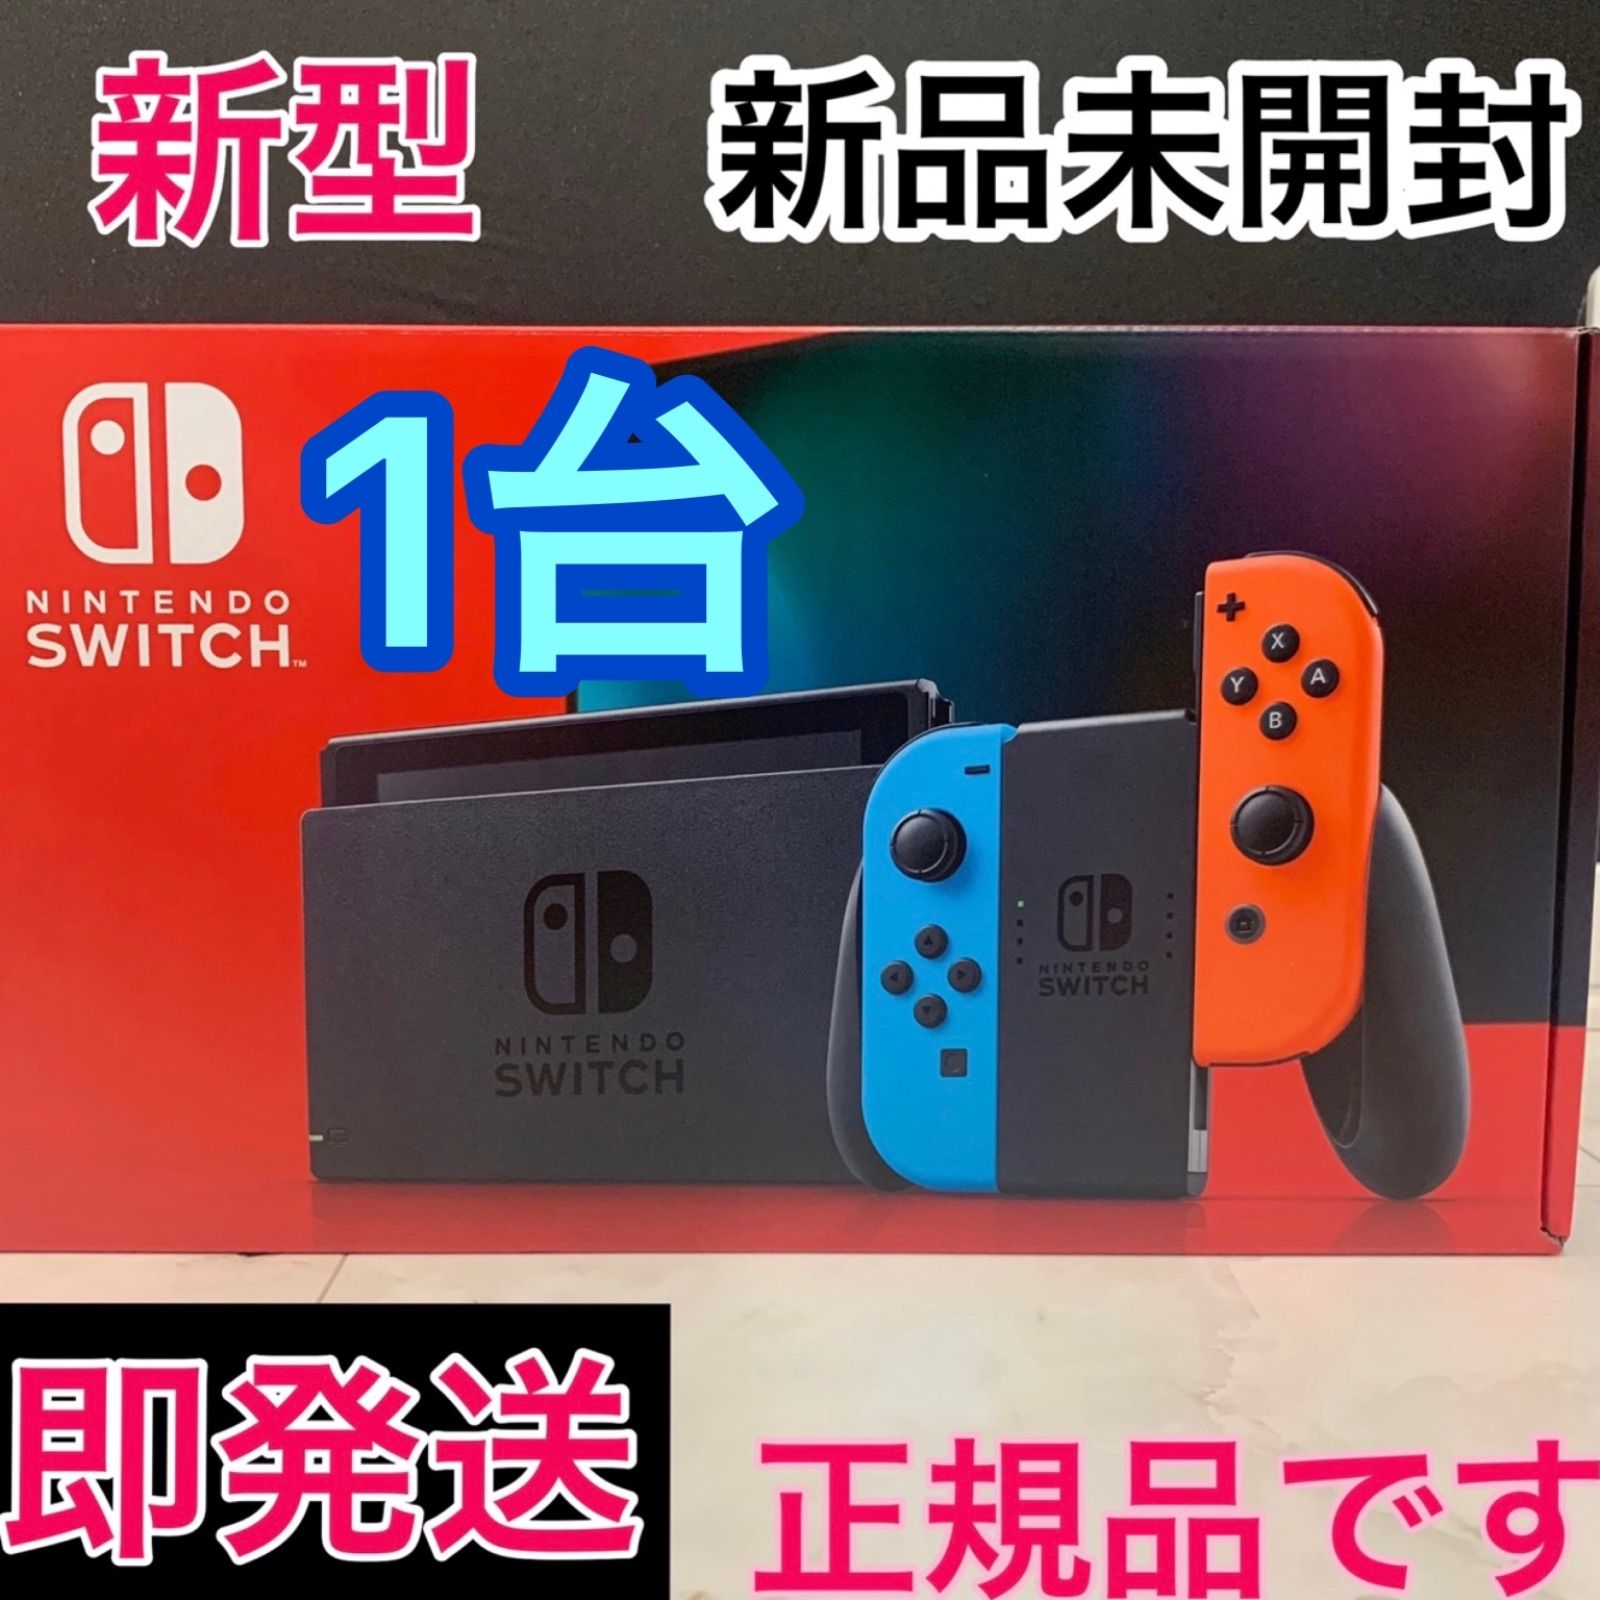 【 新品未開封 】新モデルNintendo Switch本体  1台ネオングレー